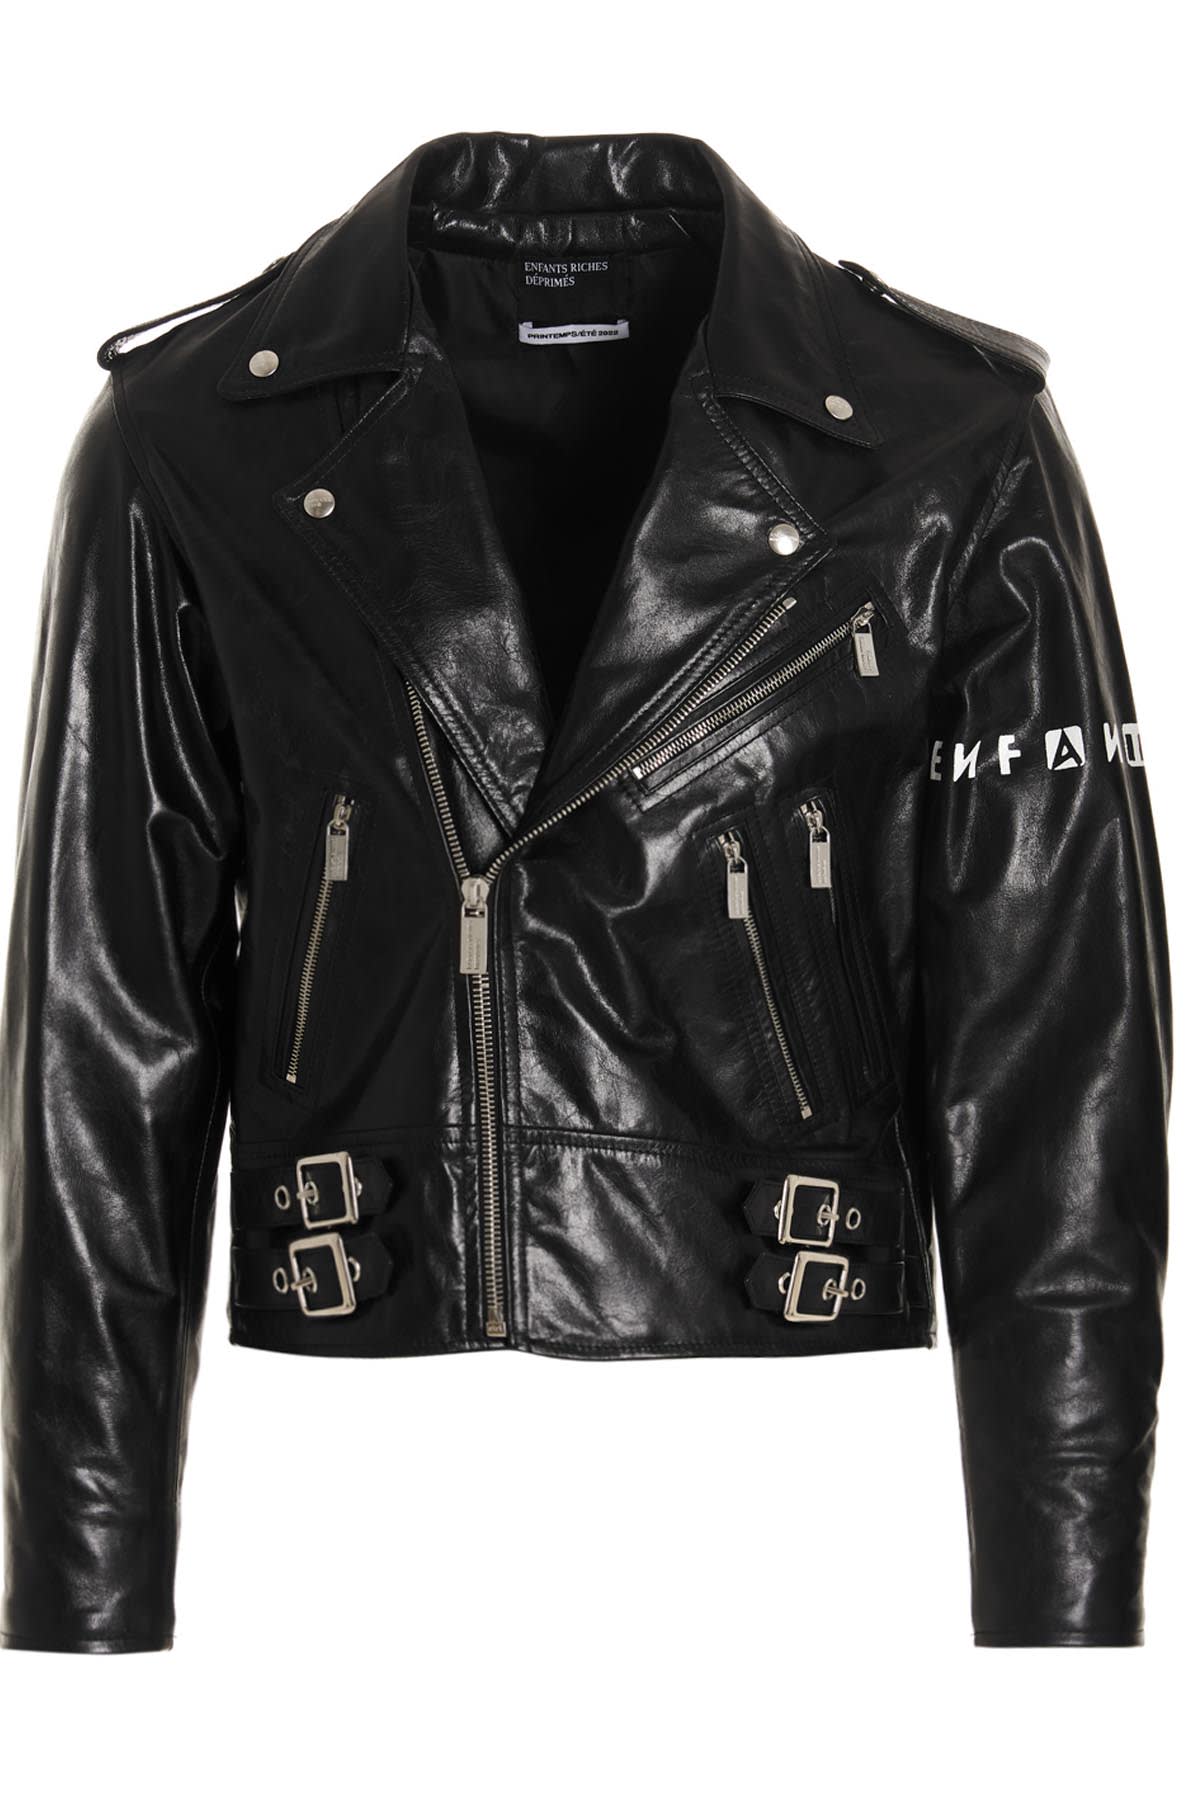 Enfants Riches Deprimes goth Couple Leather Biker Jacket